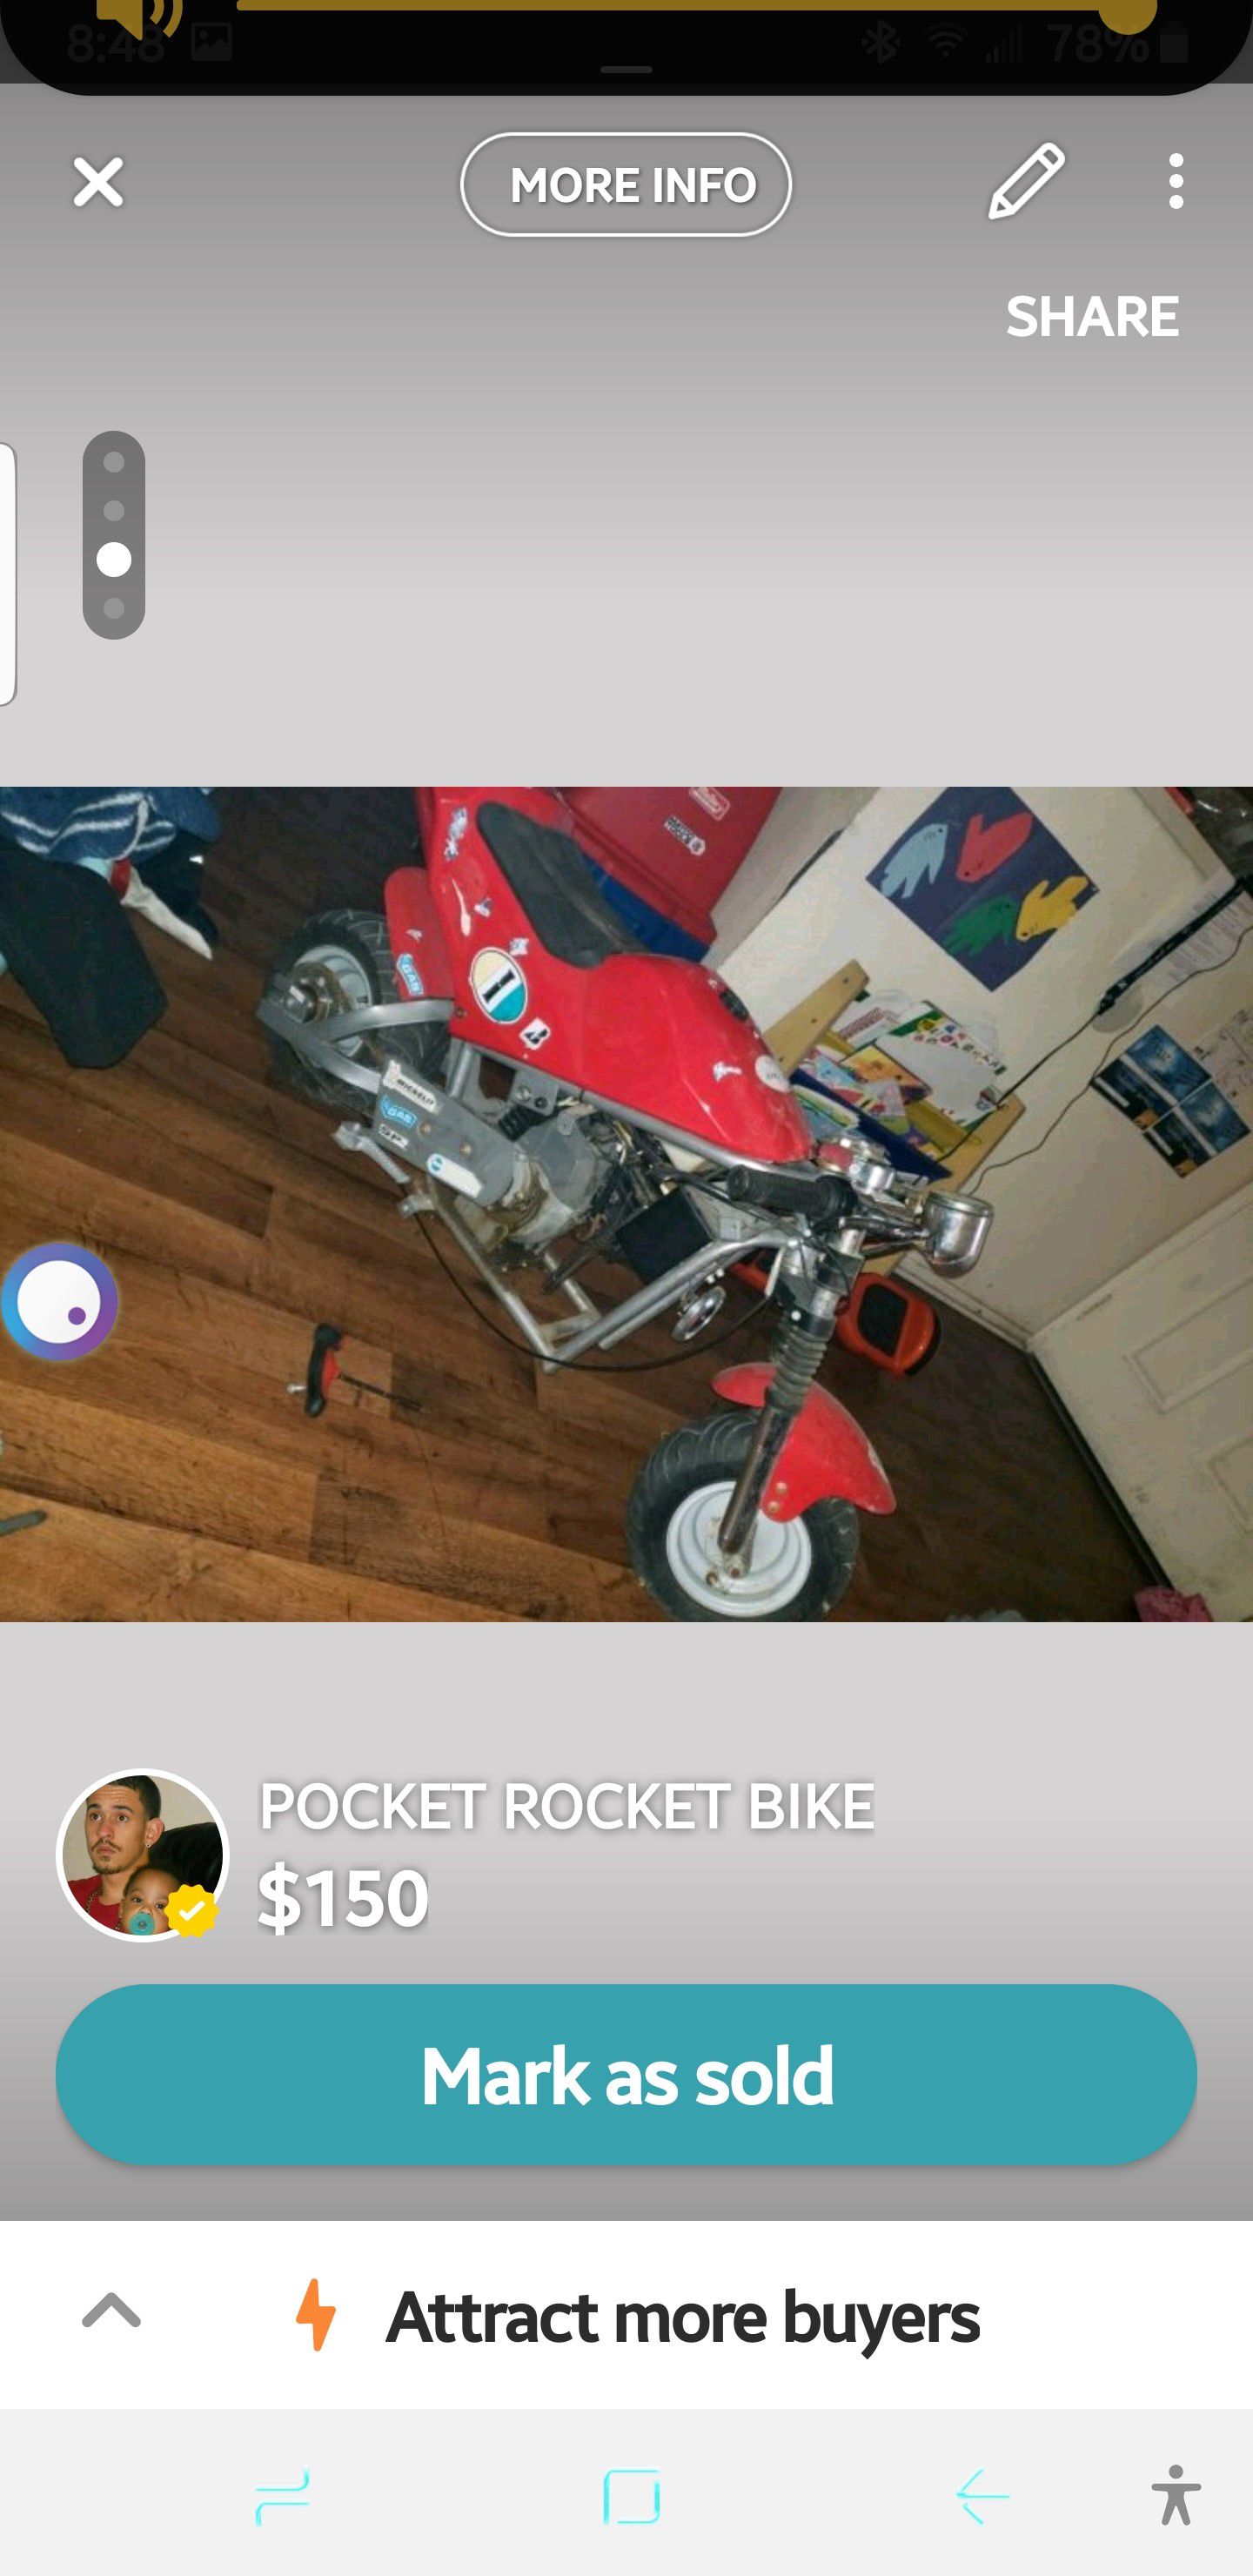 Pocket rocket bike